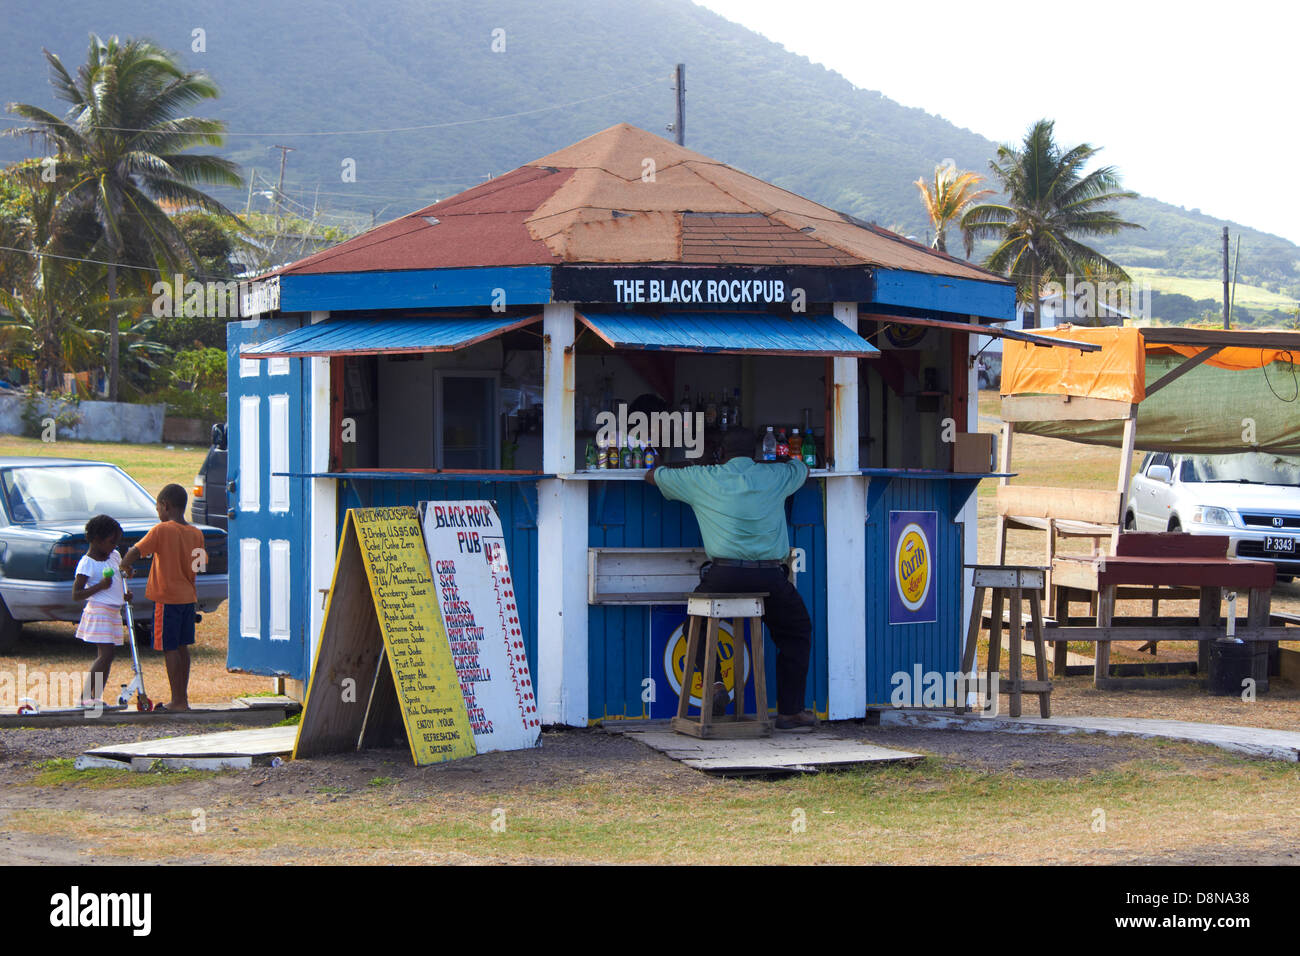 La Black Rock pub dell'isola caraibica di Basseterre Saint Kitts e Nevis isola nel West Indies Foto Stock